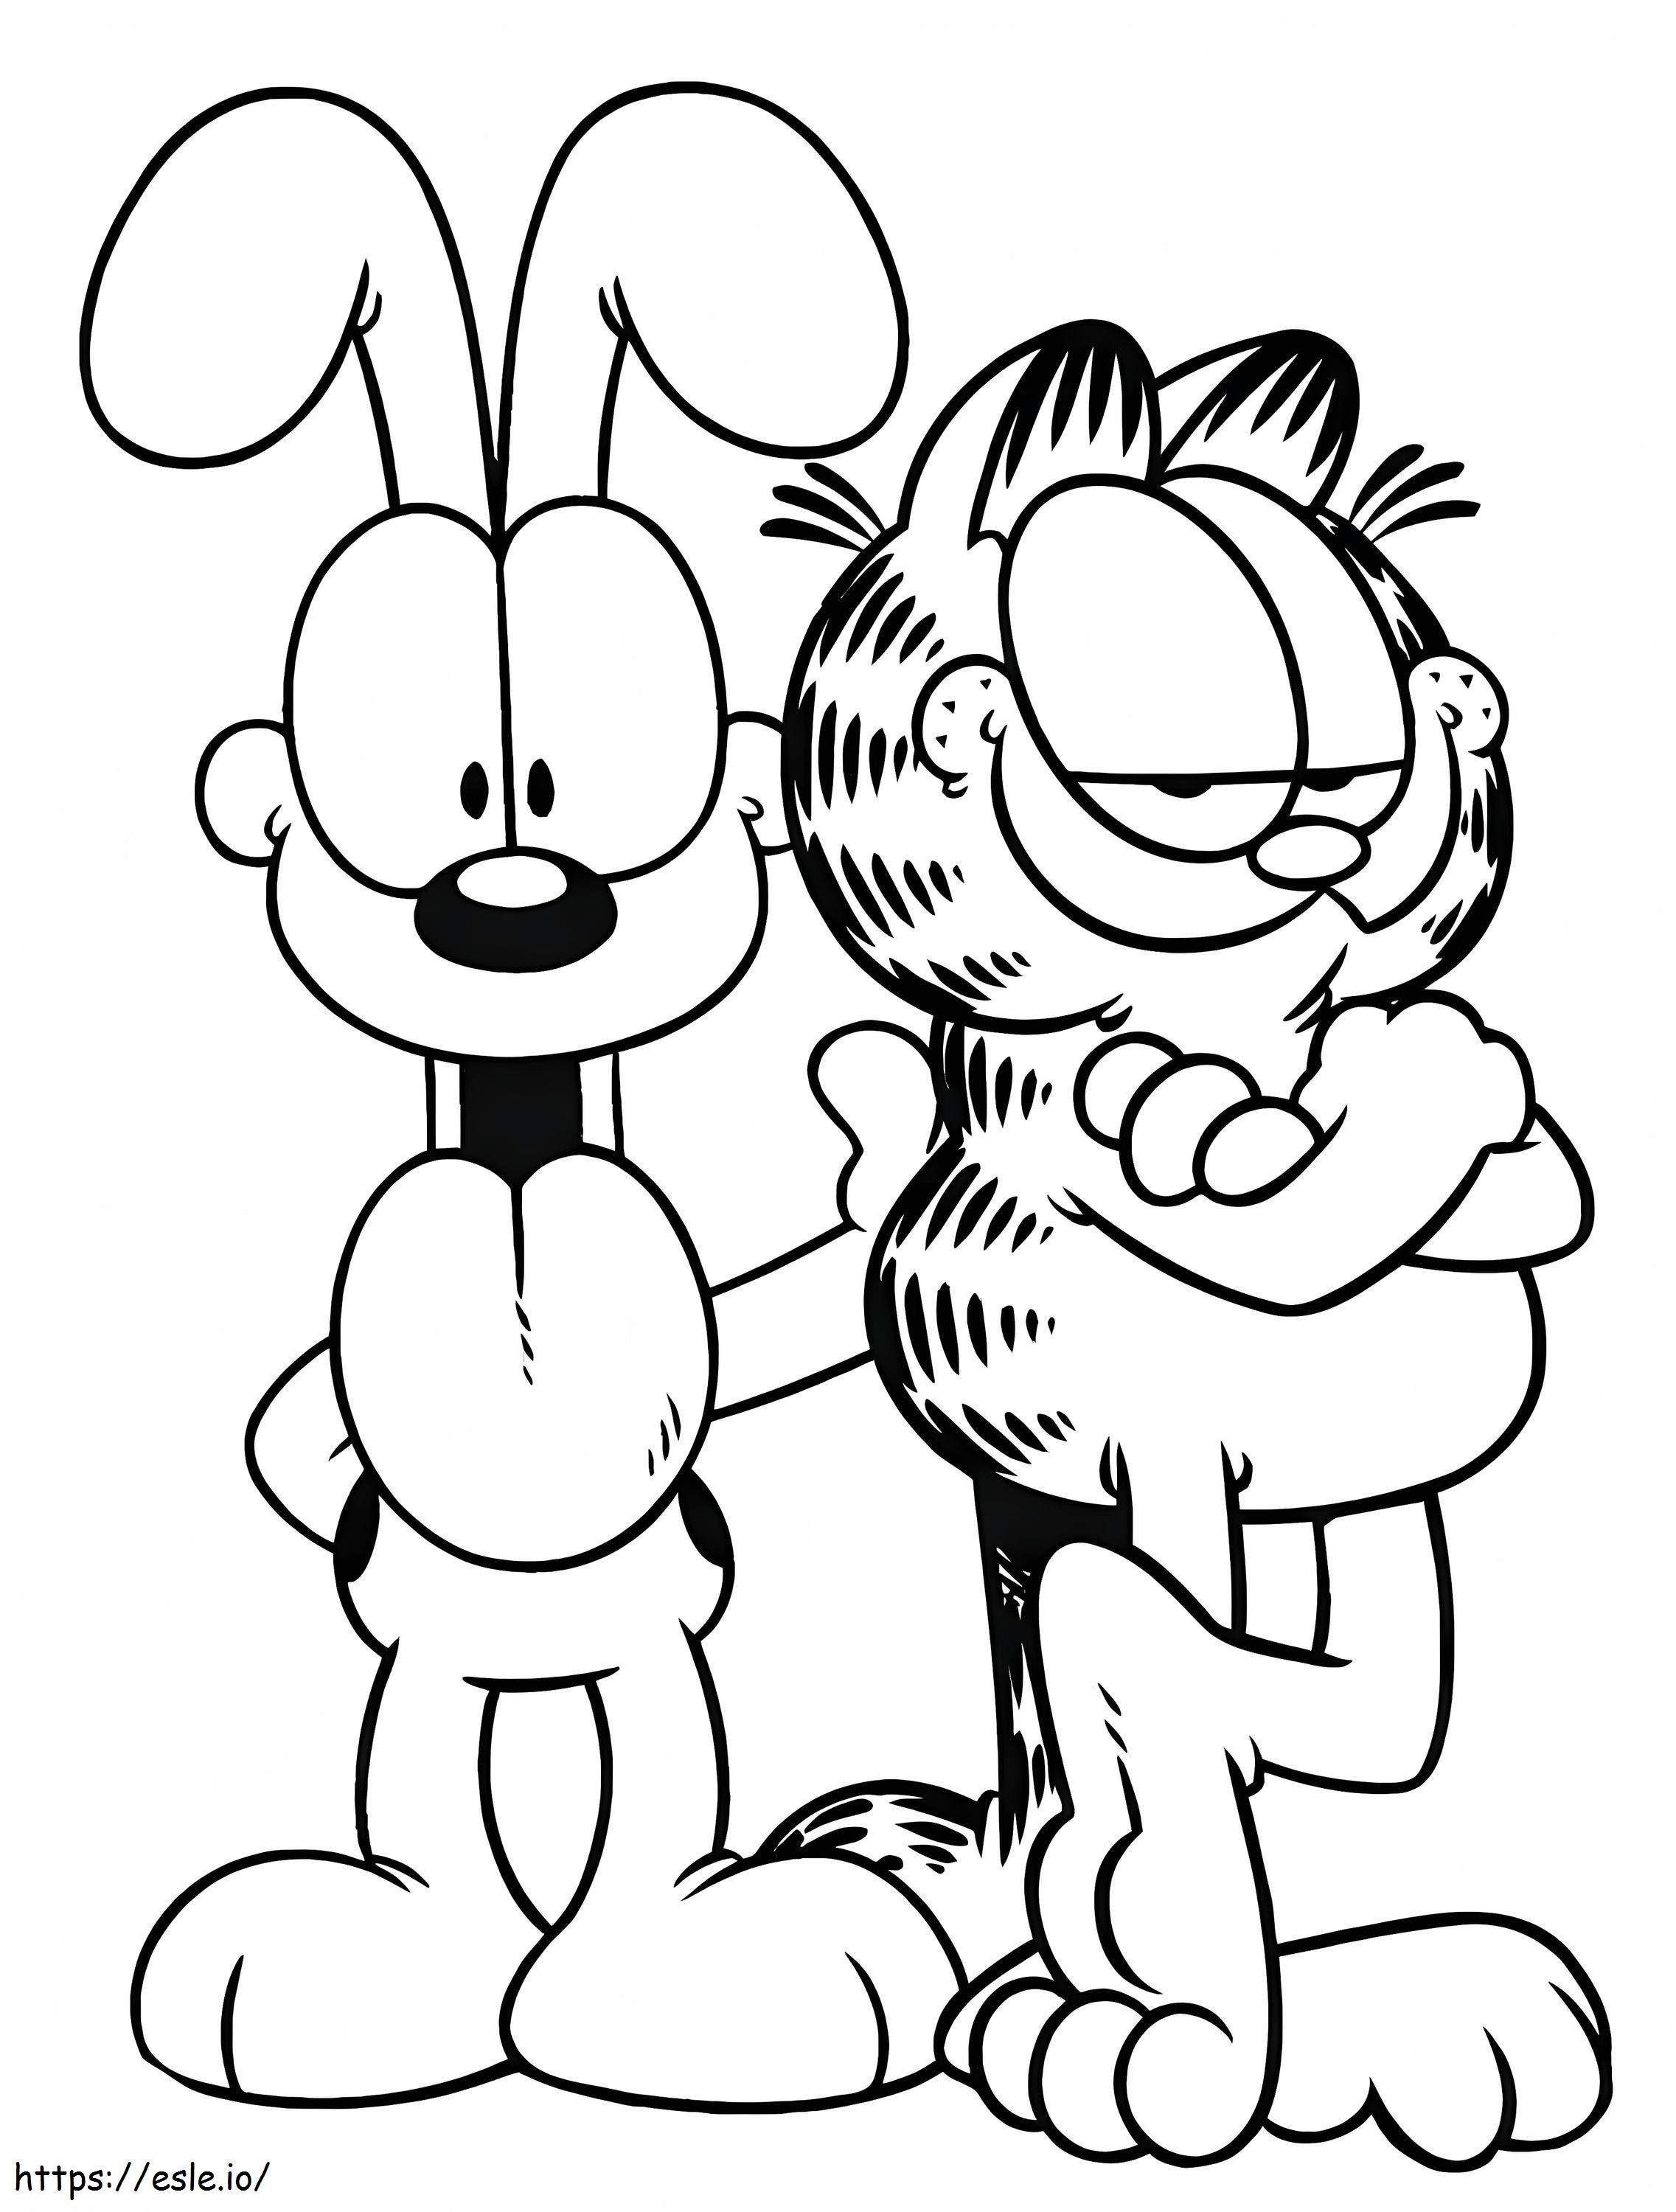 Garfield Y Odie kolorowanka